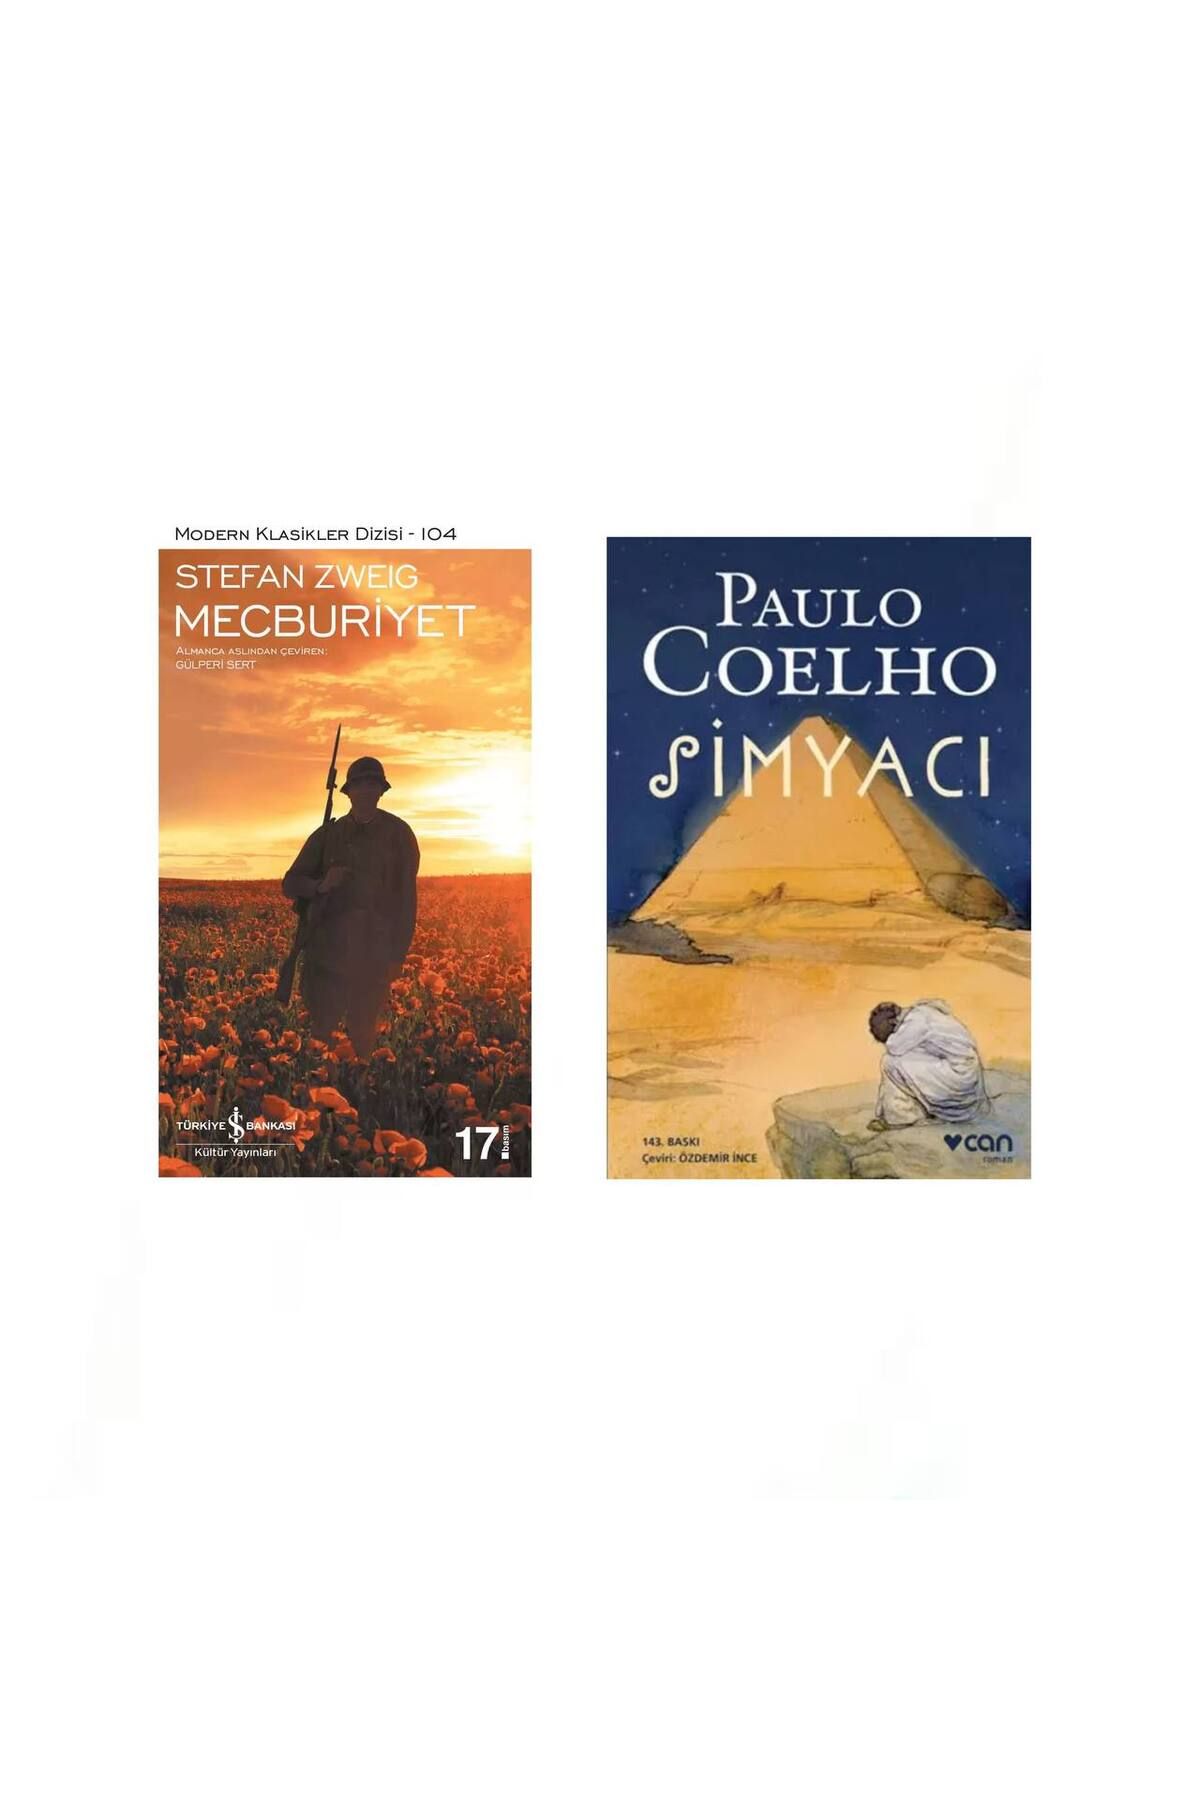 Türkiye İş Bankası Kültür Yayınları Mecburiyet (Stefan Zweig) - Simyacı (Paulo Coelho)